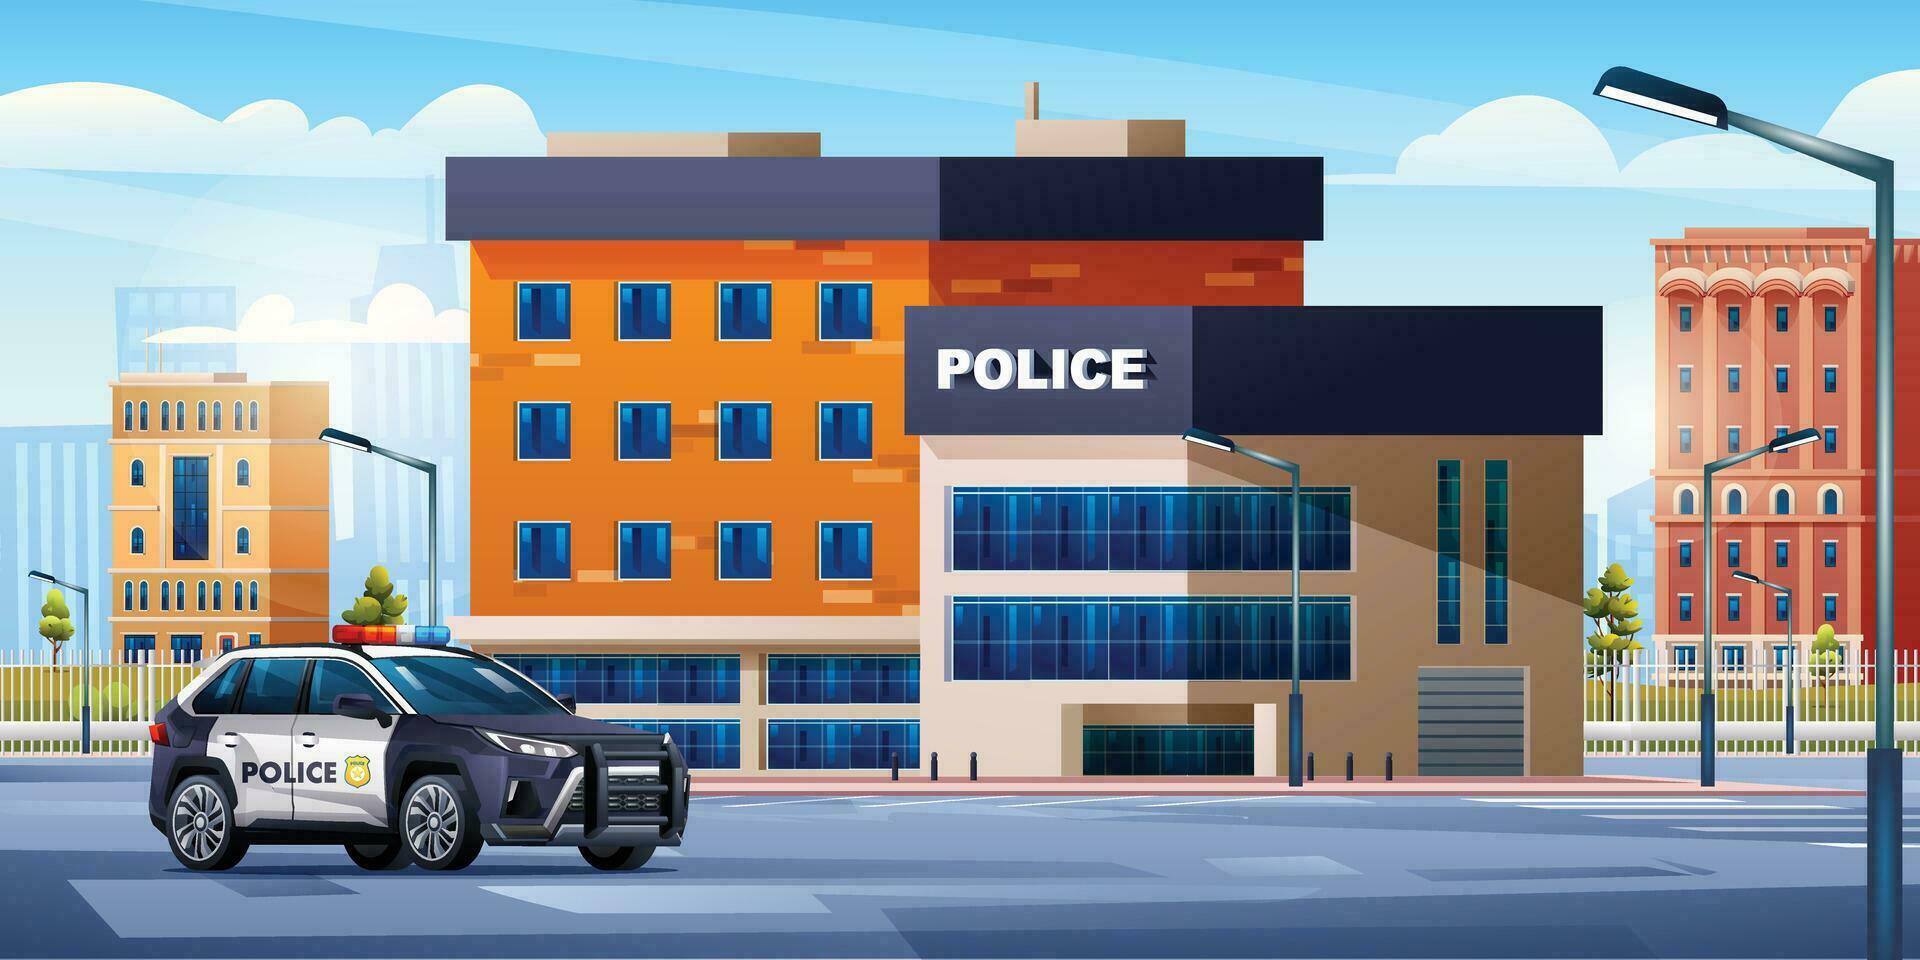 Polizei Bahnhof Gebäude mit patrouillieren Auto auf Stadtbild Hintergrund. Polizei Abteilung Büro. Stadt Landschaft Vektor Karikatur Illustration